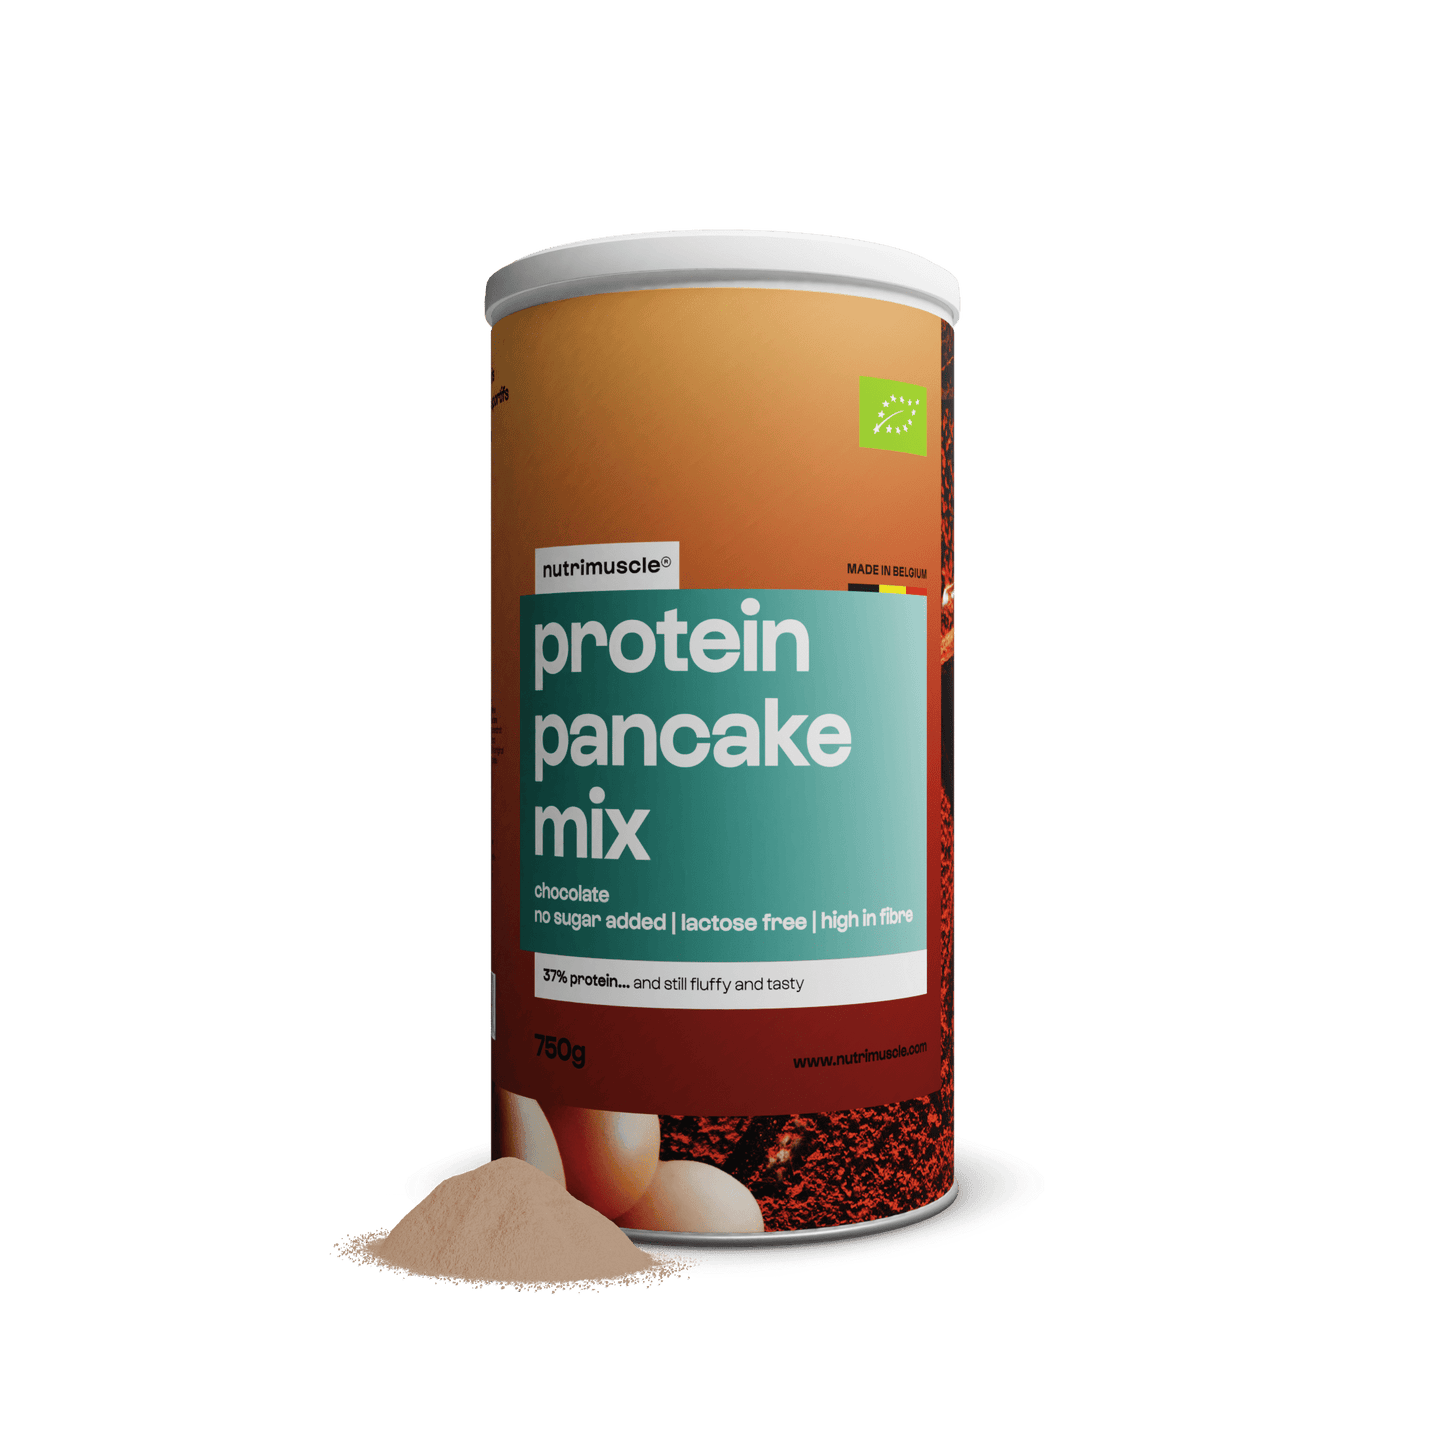 Nutrimuscle Protéines Chocolat / 750 g Mix pour pancakes protéinés bio